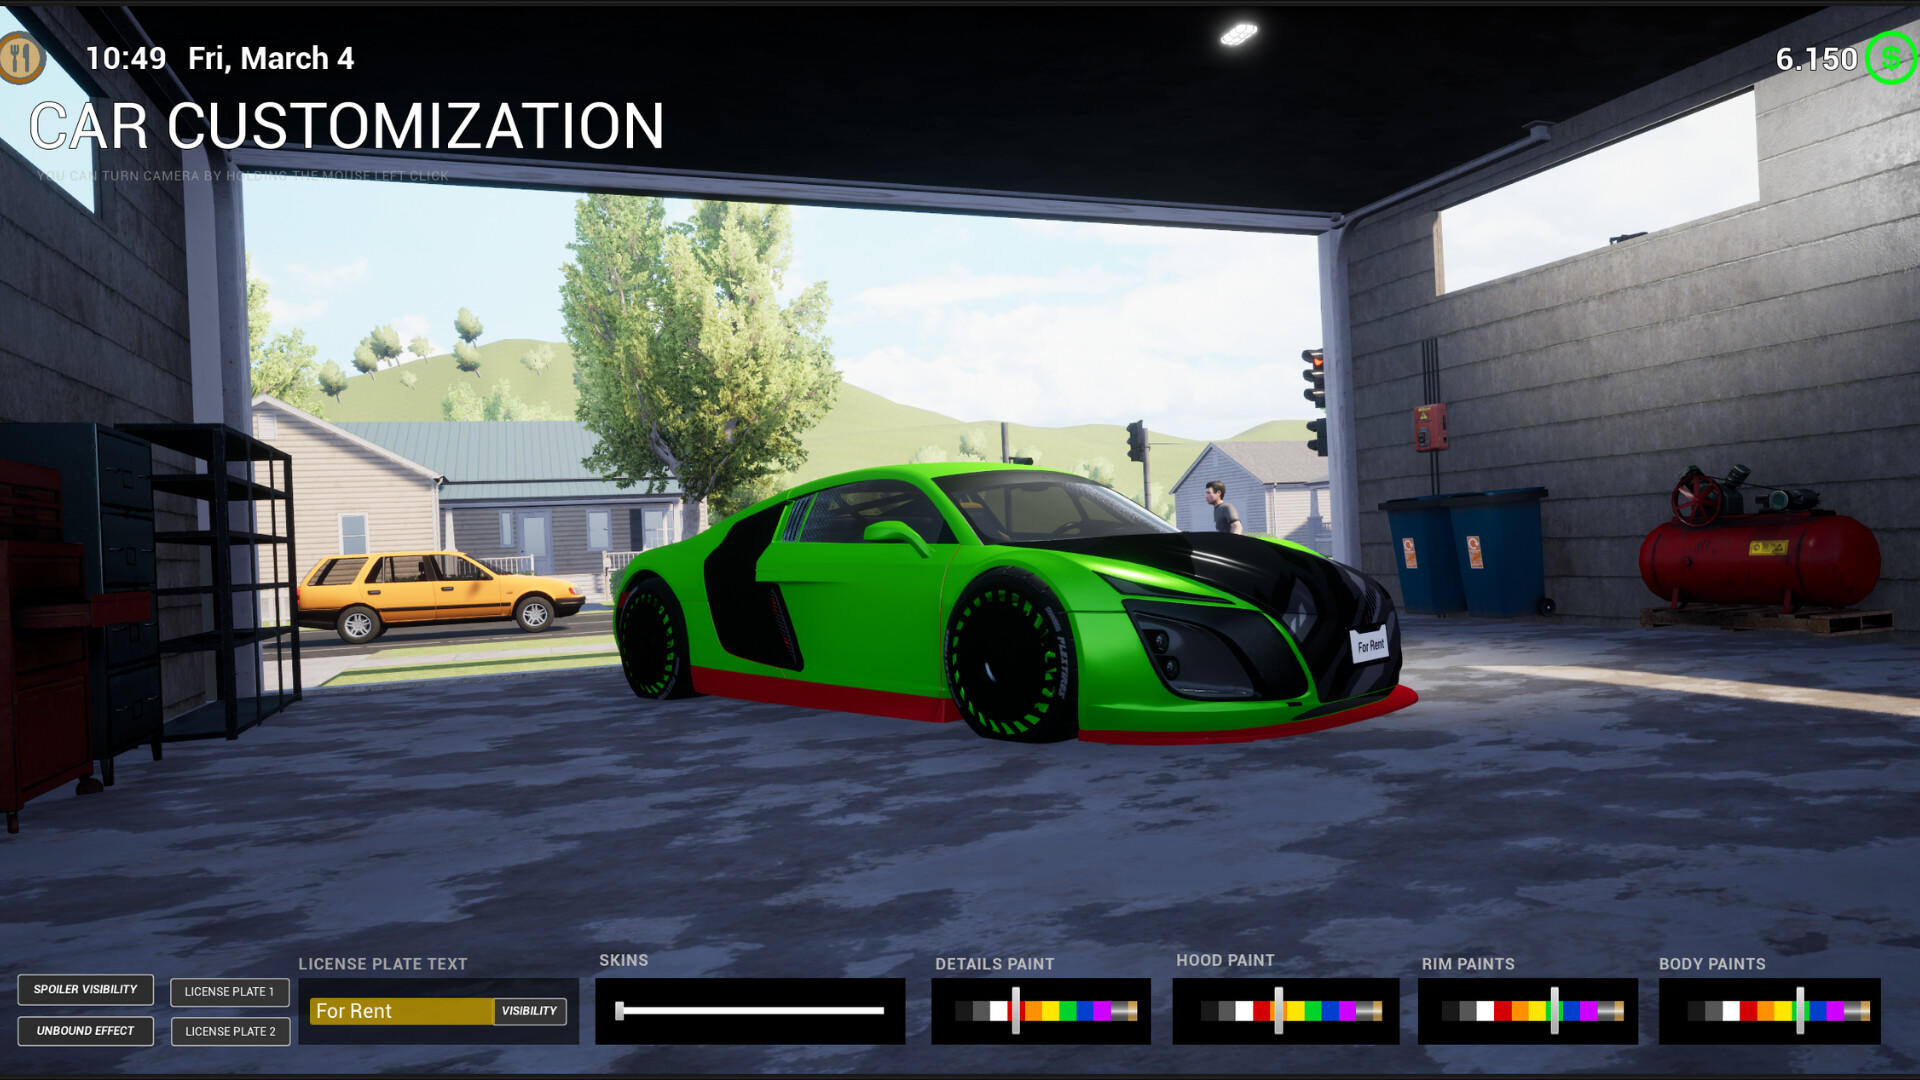 Rent A Car Simulator 24 screenshot game